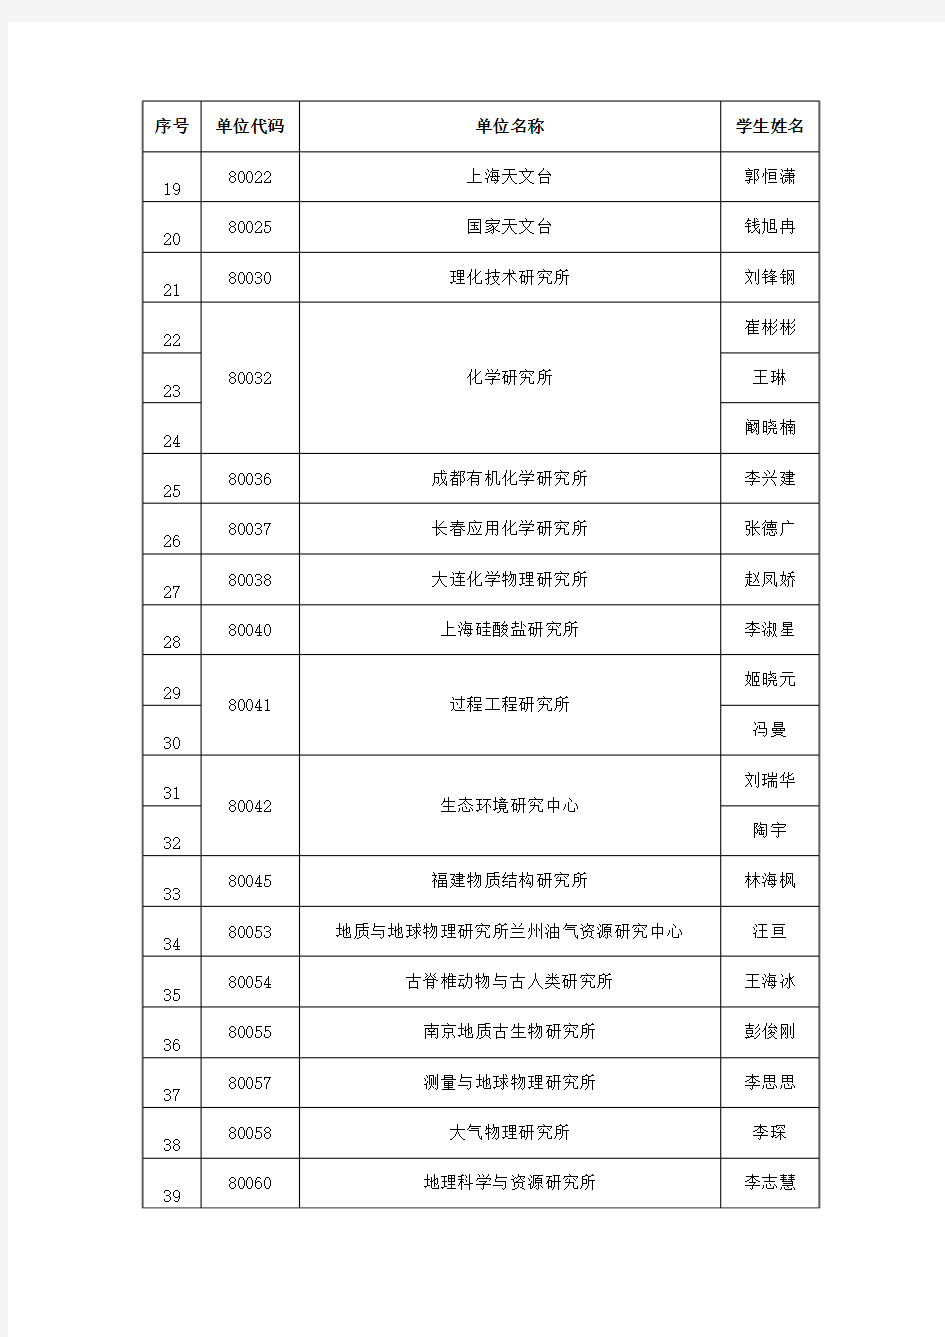 中国科学院大学2015年国家建设高水平大学公派研究生项目(联合培养)推荐申请人名单